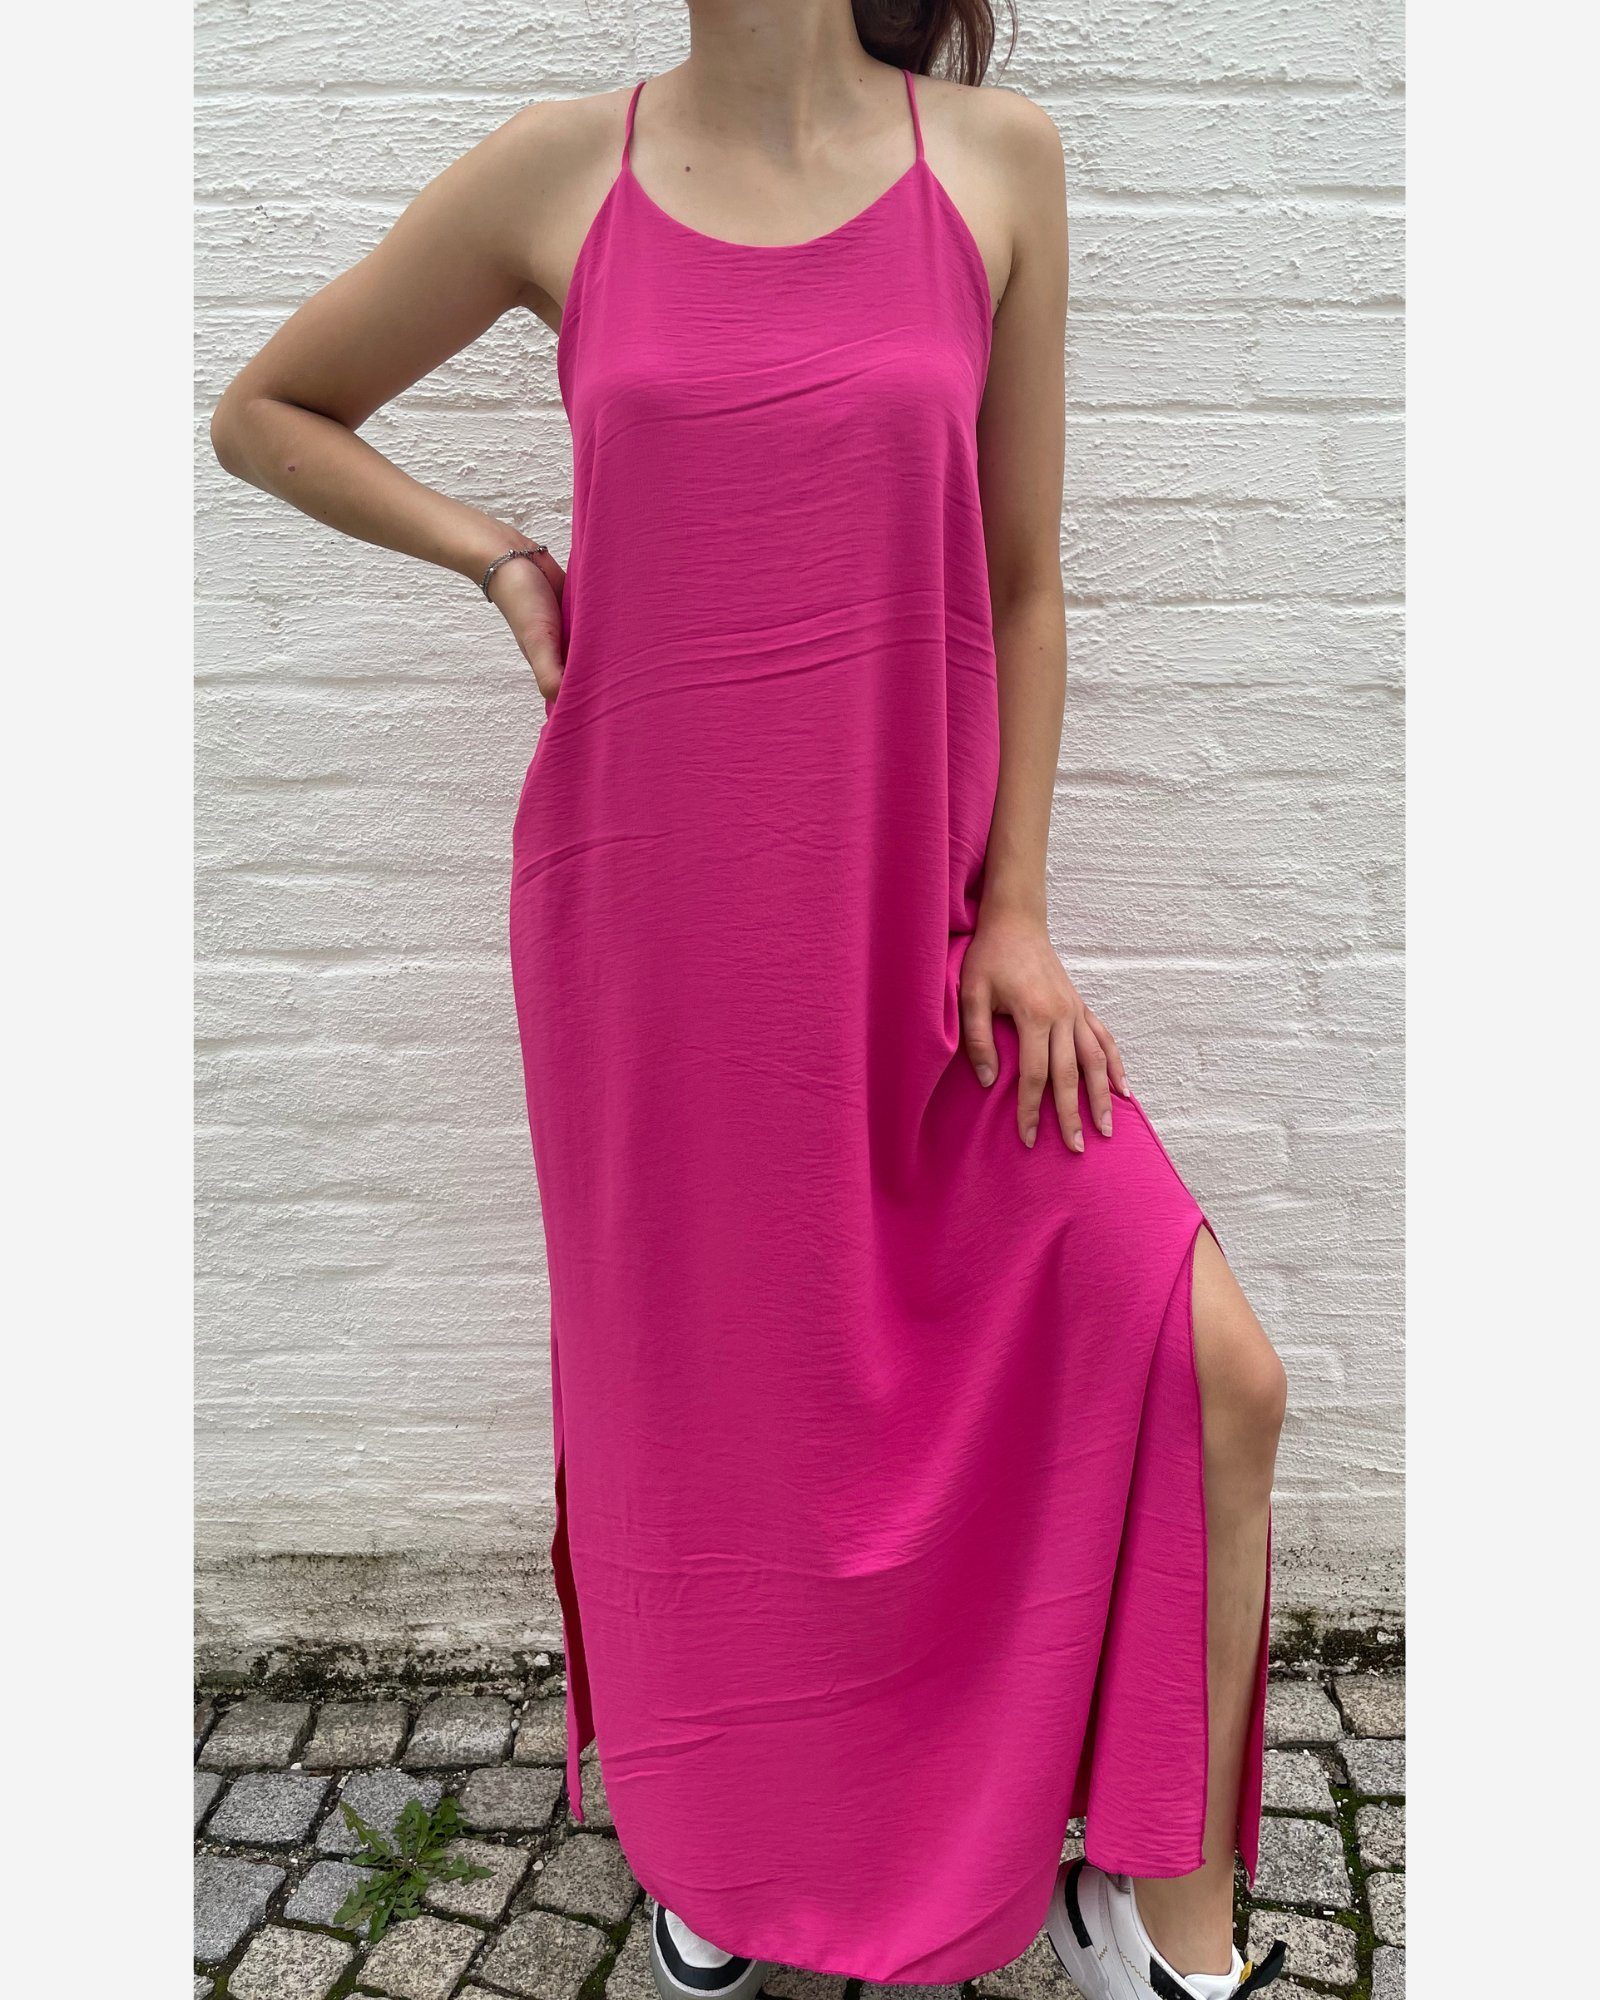 ITALY VIBES Midikleid MONA - langes Kleid - elegantes Sommerkleid mit Schlitz - ONE SIZE passt hier Gr. XS - XL pink | Sommerkleider